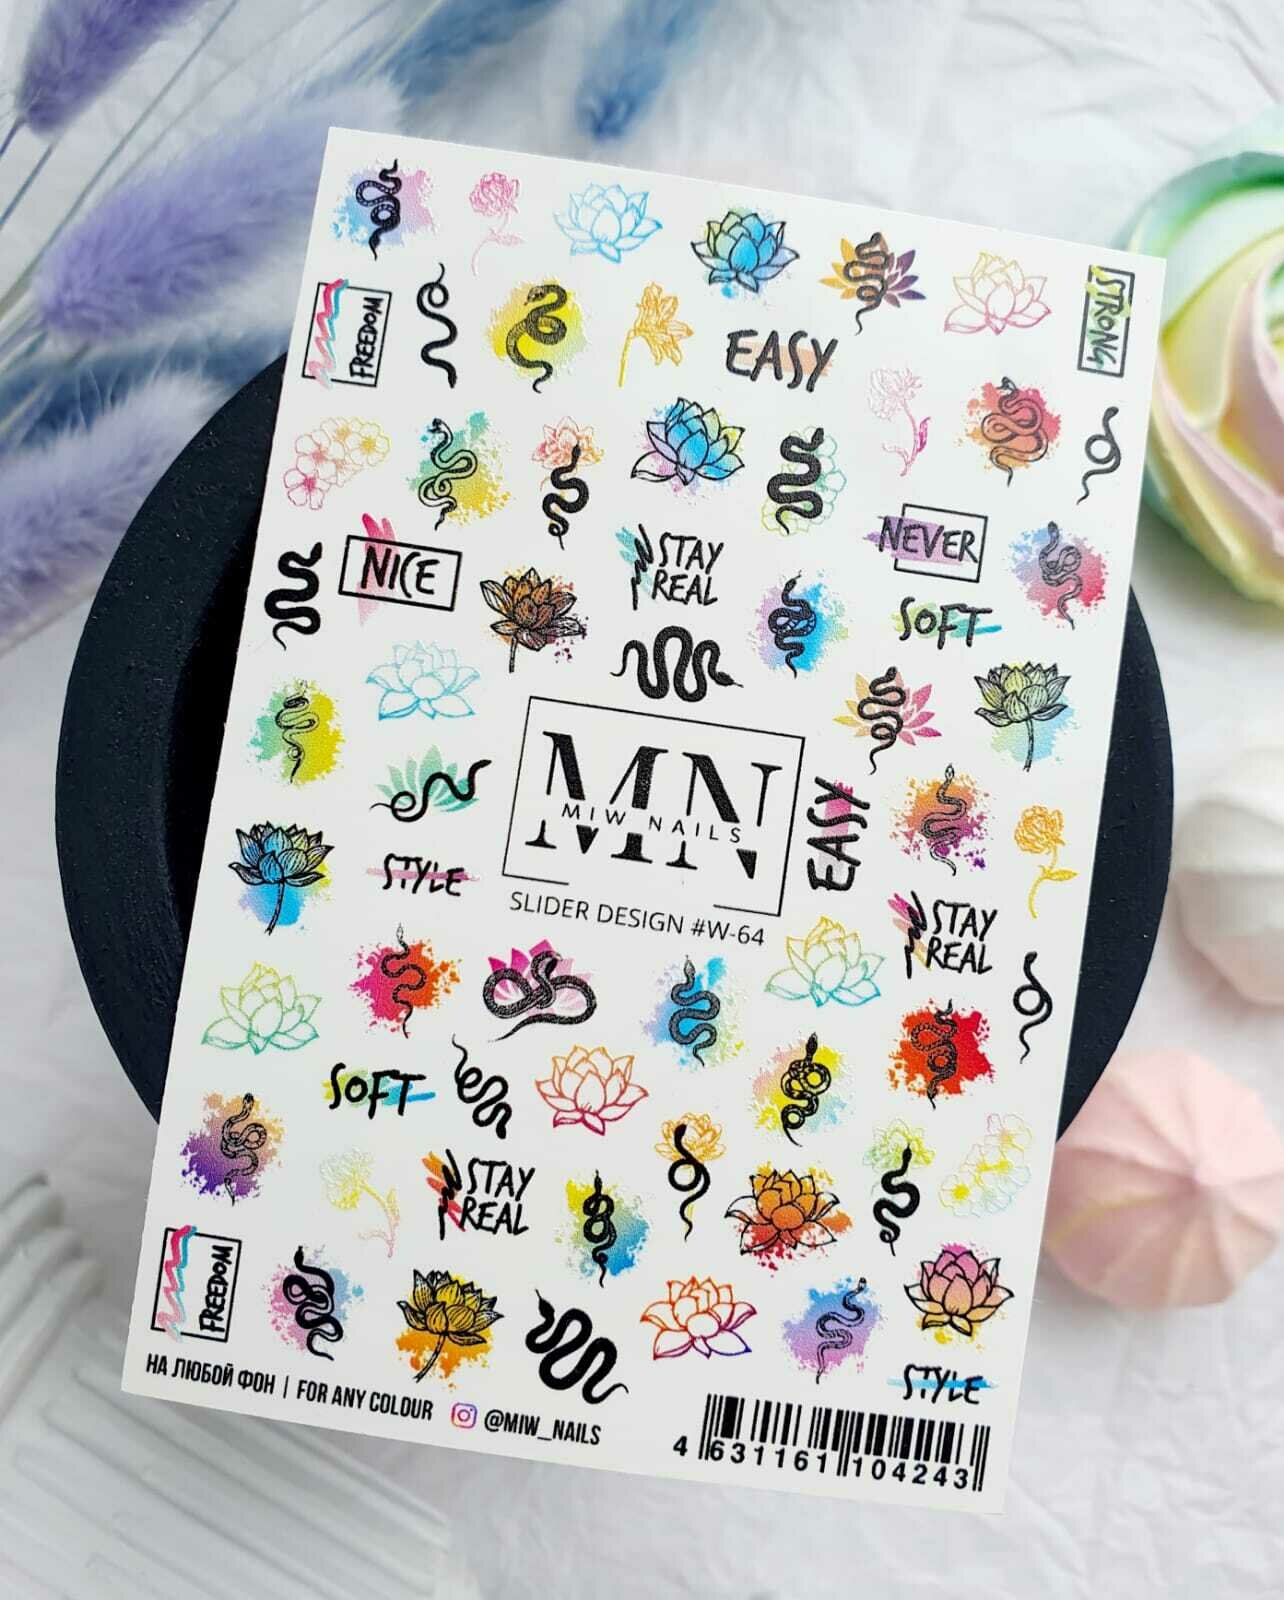 MIW Nails "Слайдеры для ногтей" водные наклейки для дизайна #W-64 цветной змея, цветы